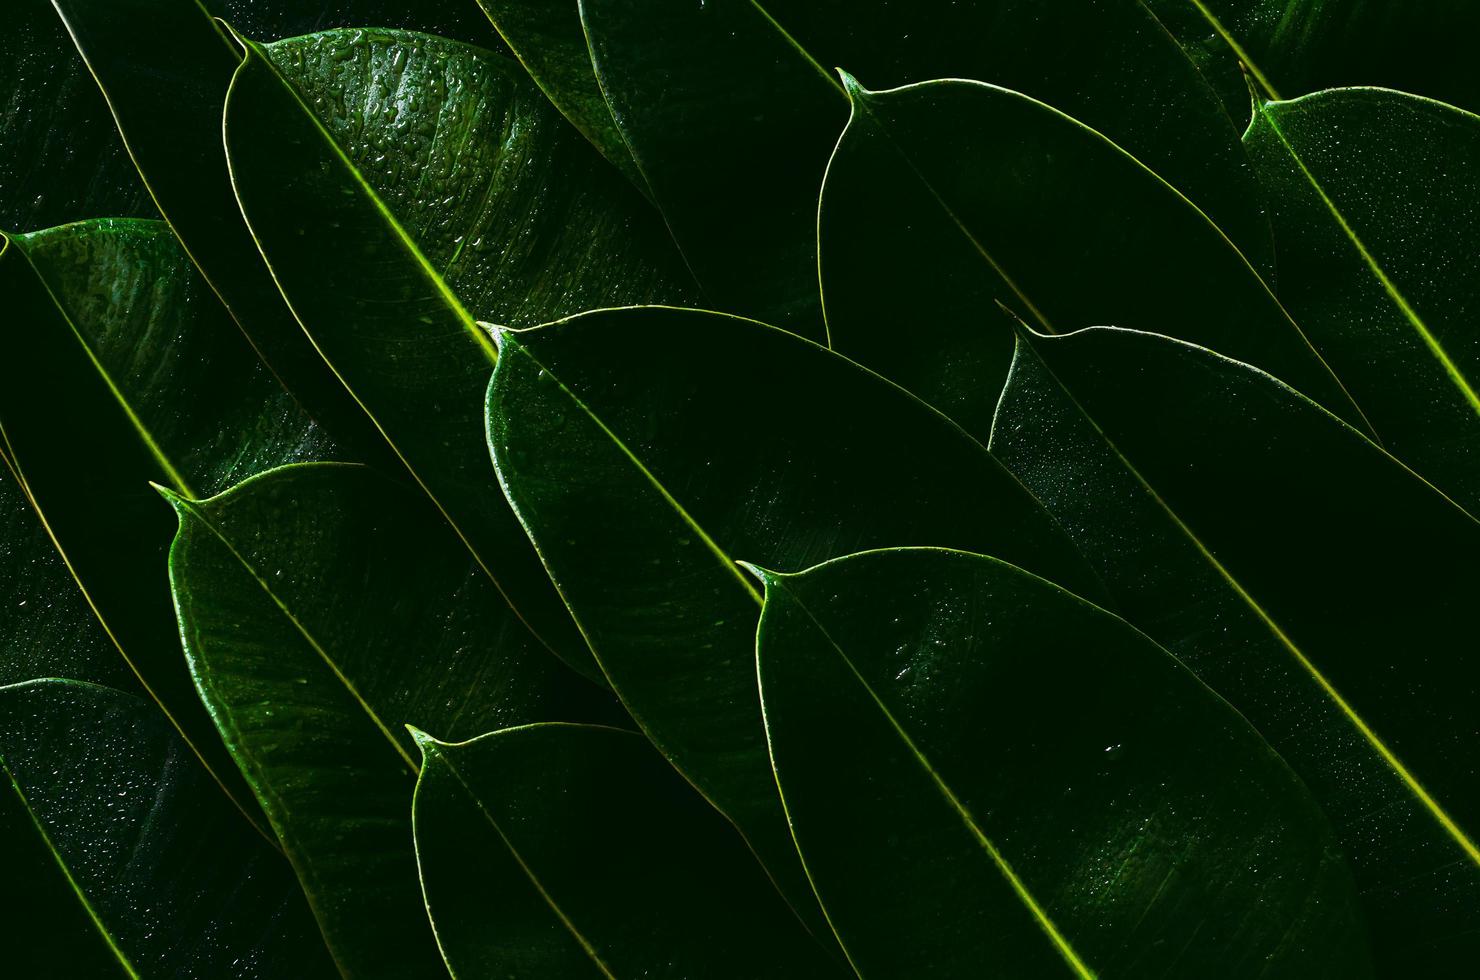 feuilles d'arbre à caoutchouc vert frais pour le concept de photo d'arrière-plan.